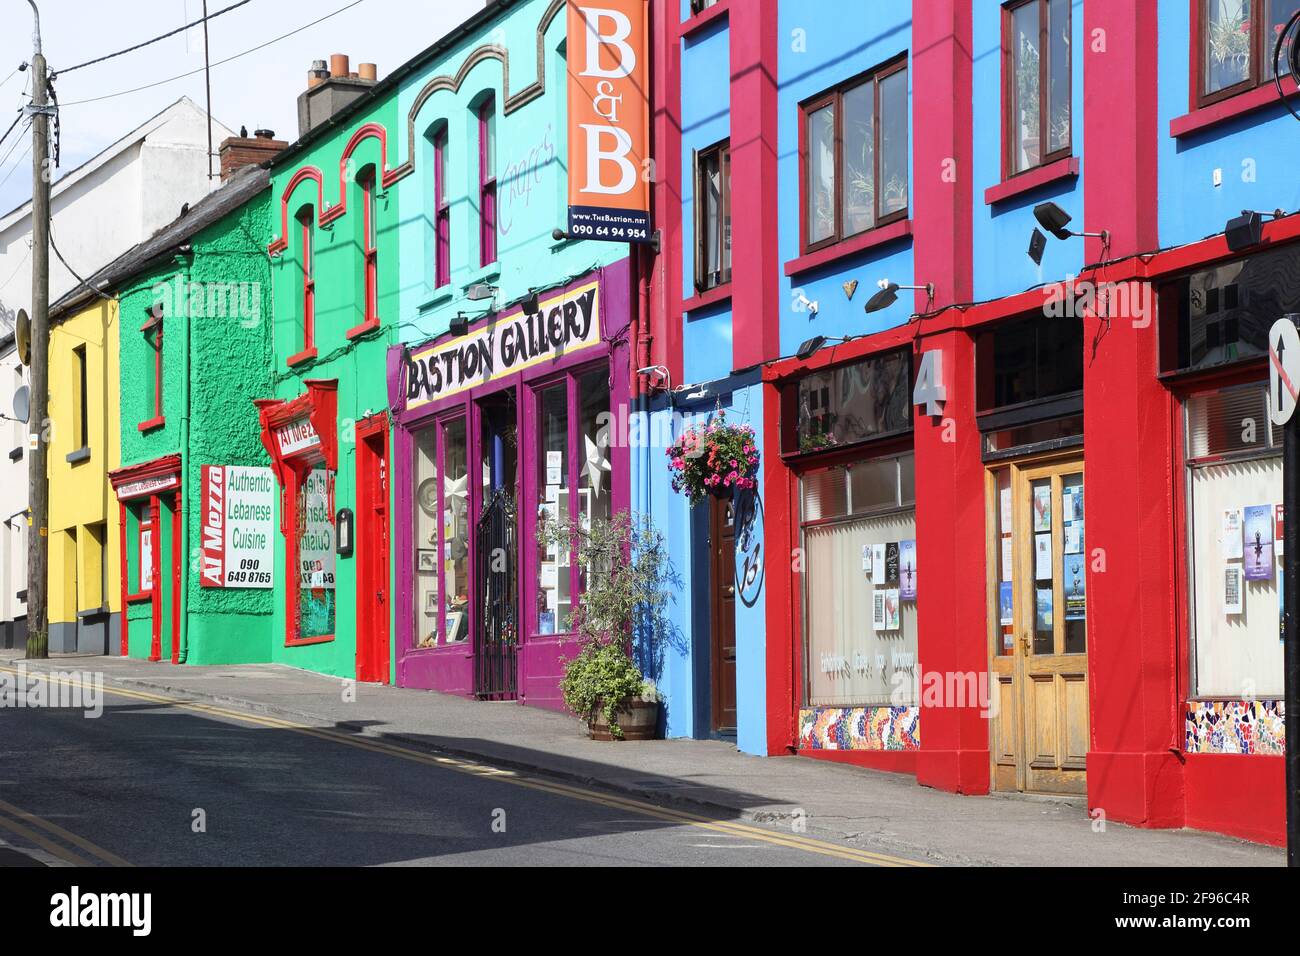 Irlanda, Athlone, fachadas de casas de colores Foto de stock